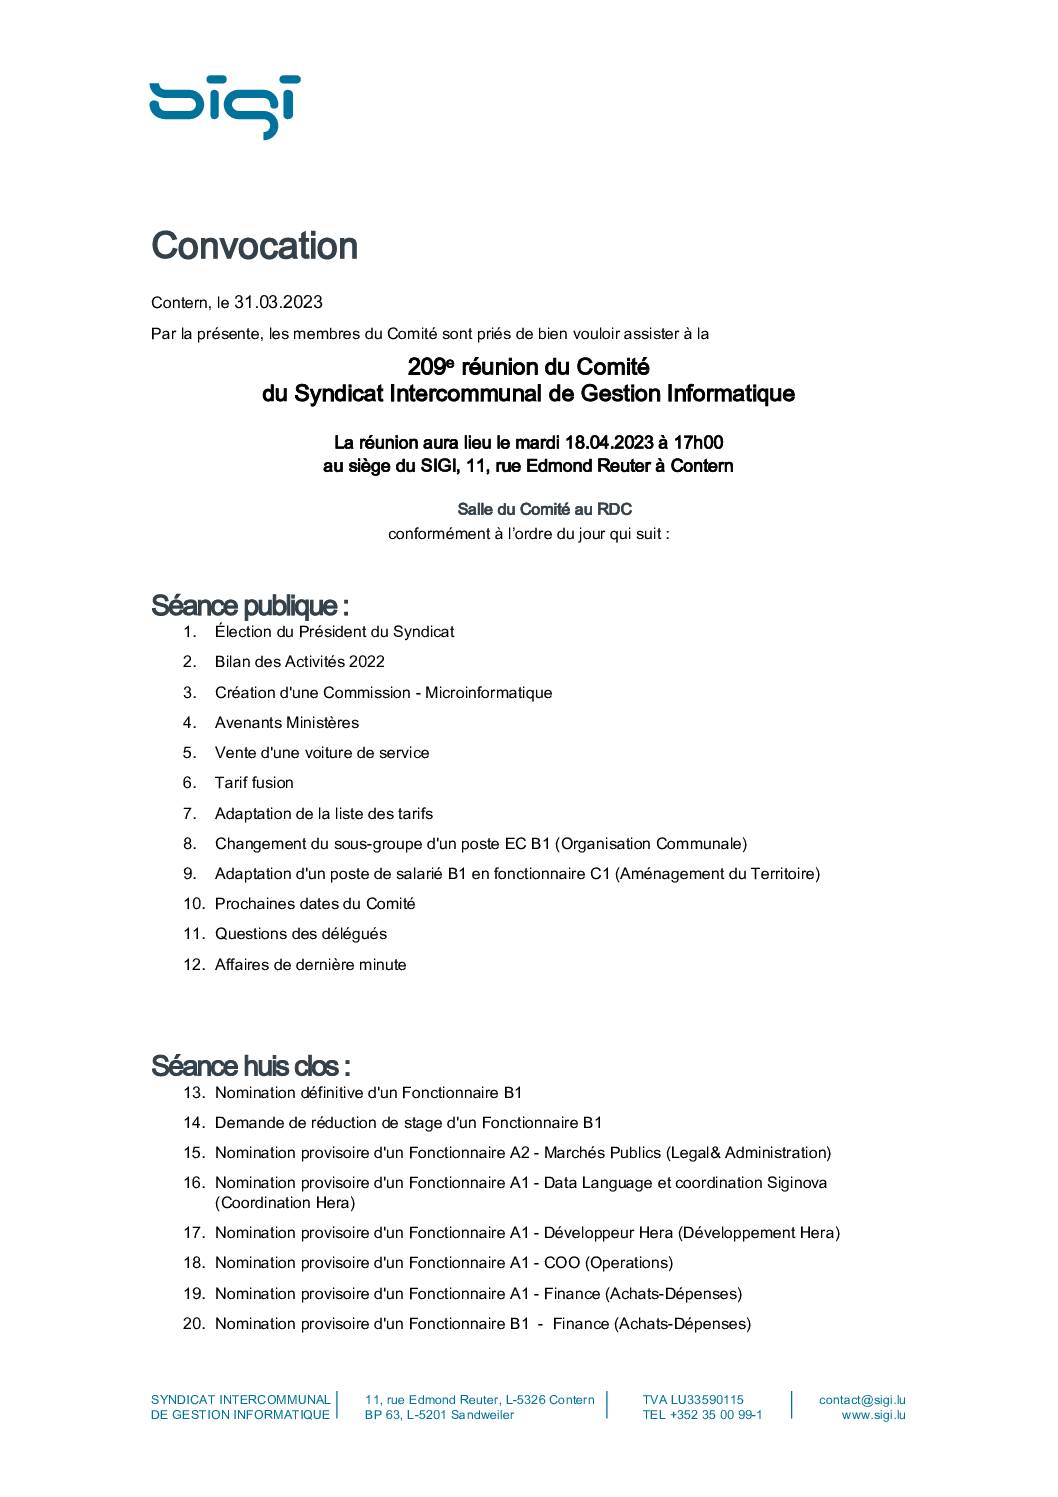 Convocation - Réunion du Comité du SIGI - 18.04.2023